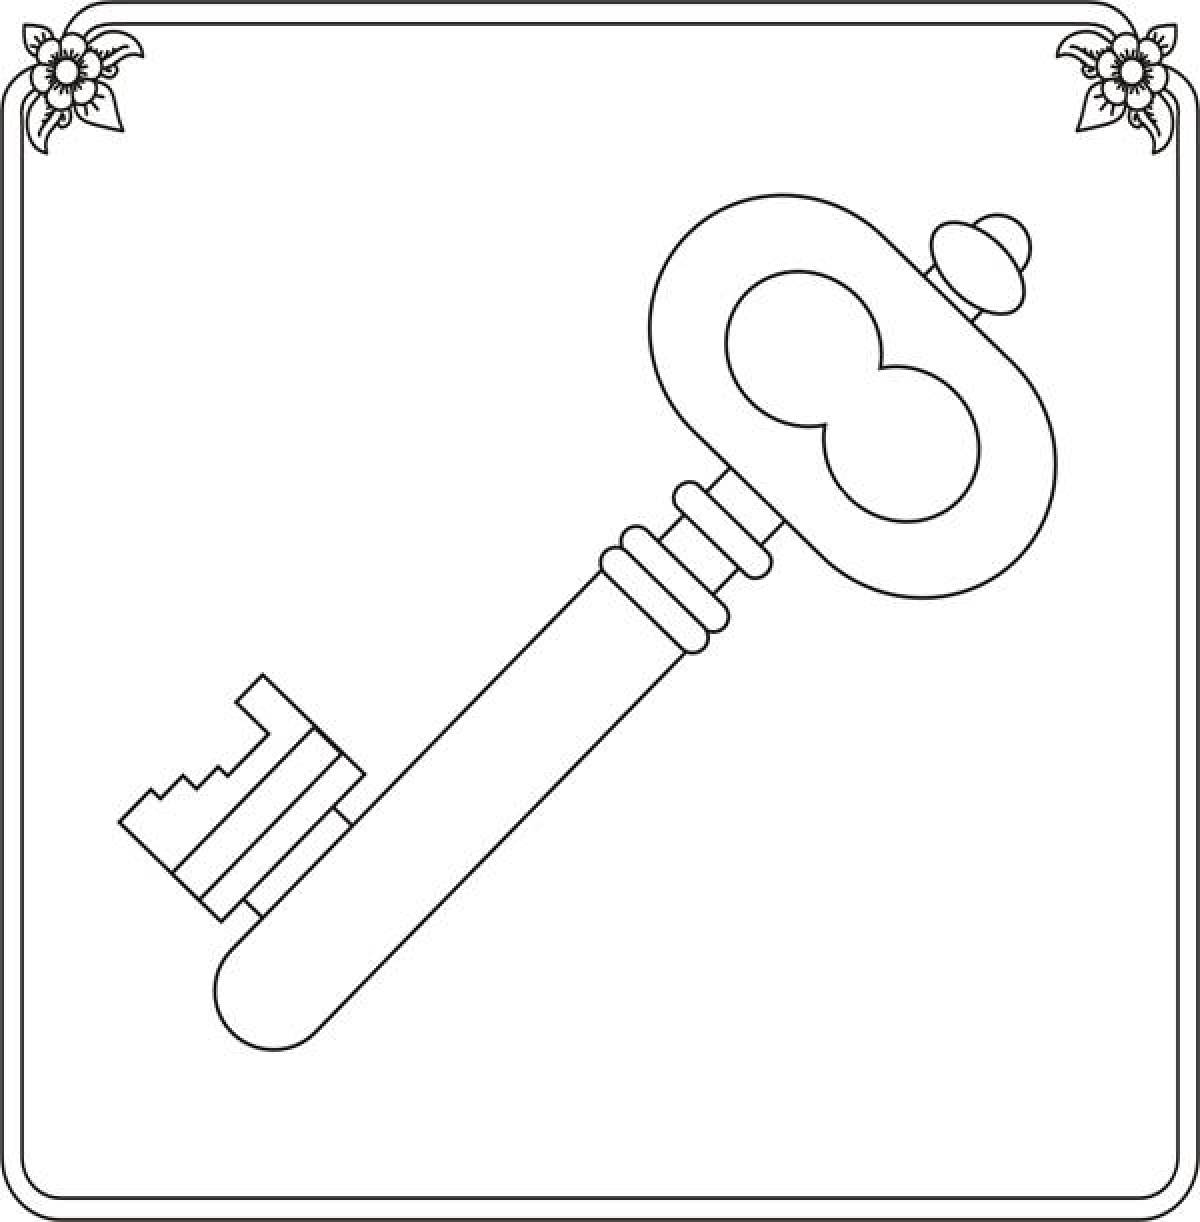 Key in a frame